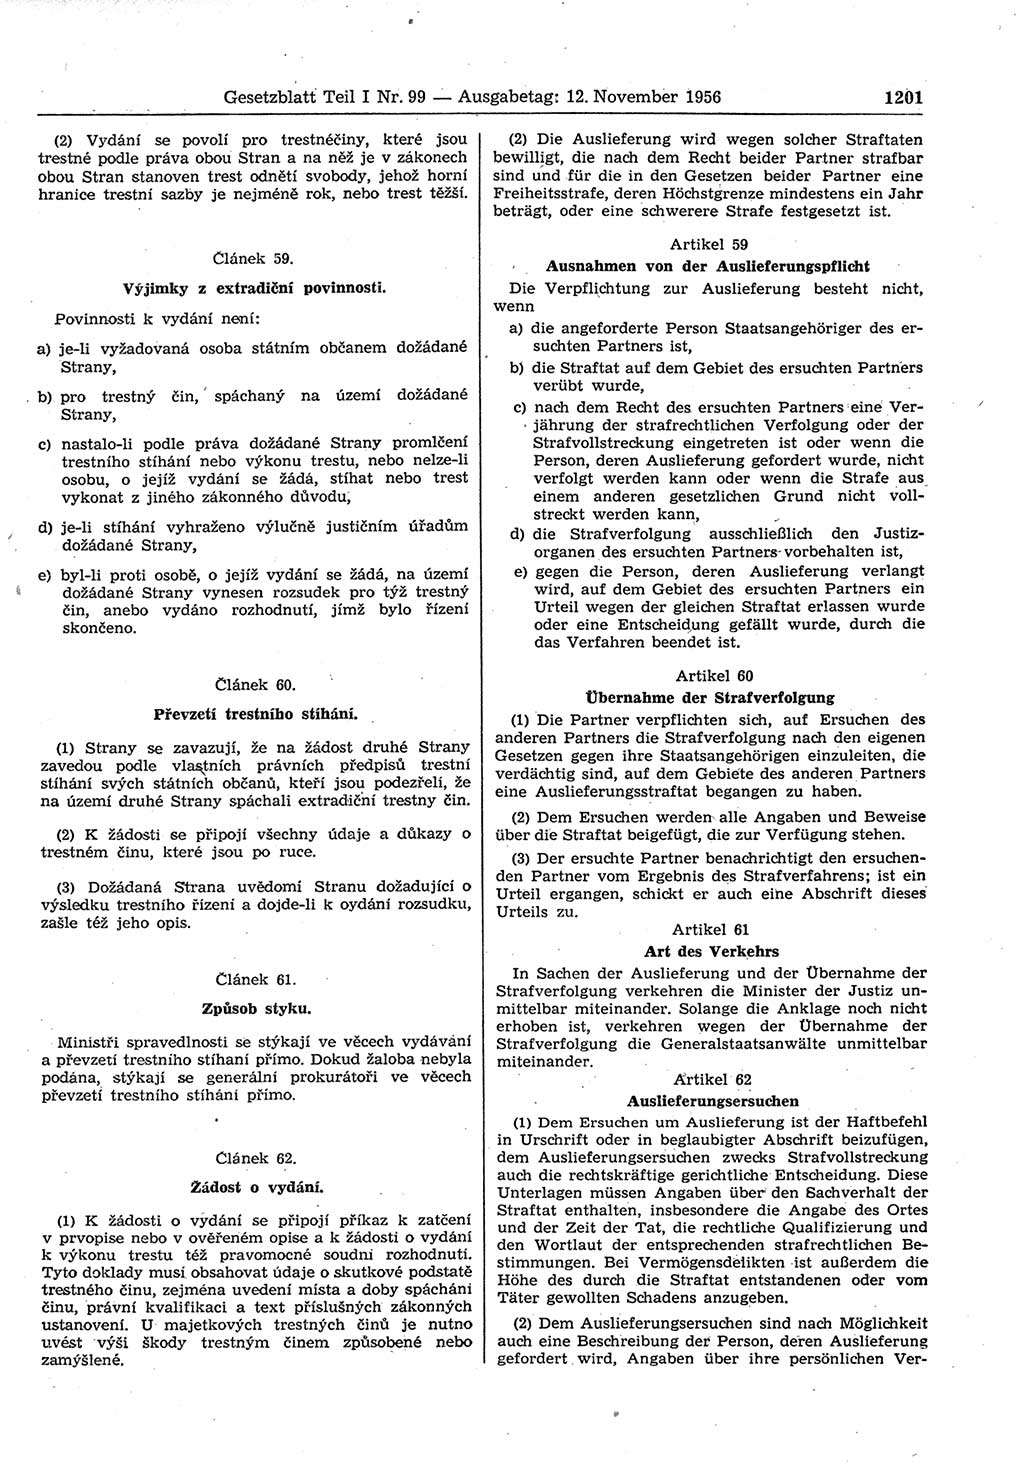 Gesetzblatt (GBl.) der Deutschen Demokratischen Republik (DDR) Teil Ⅰ 1956, Seite 1201 (GBl. DDR Ⅰ 1956, S. 1201)